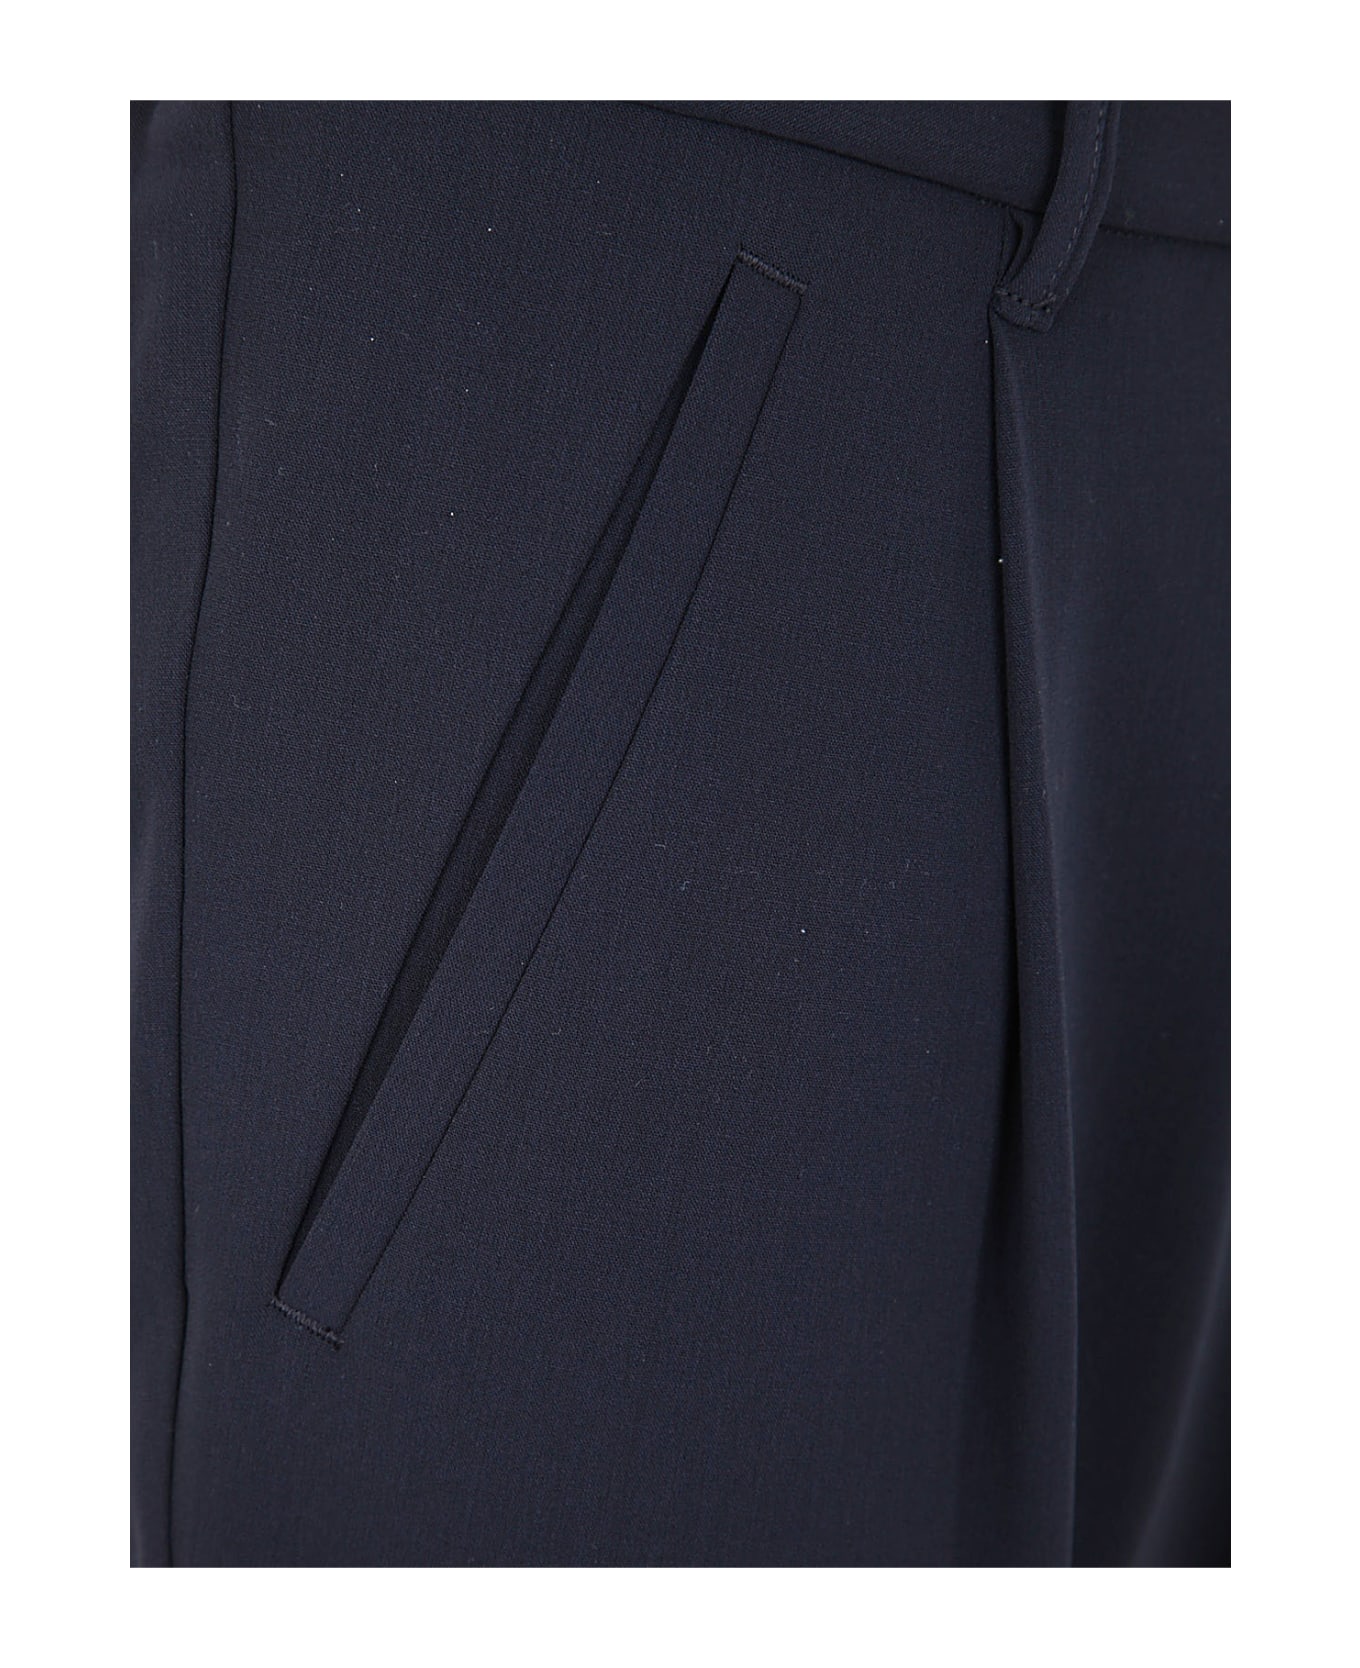 Giorgio Armani One Pence Trousers - Ubwf Blue